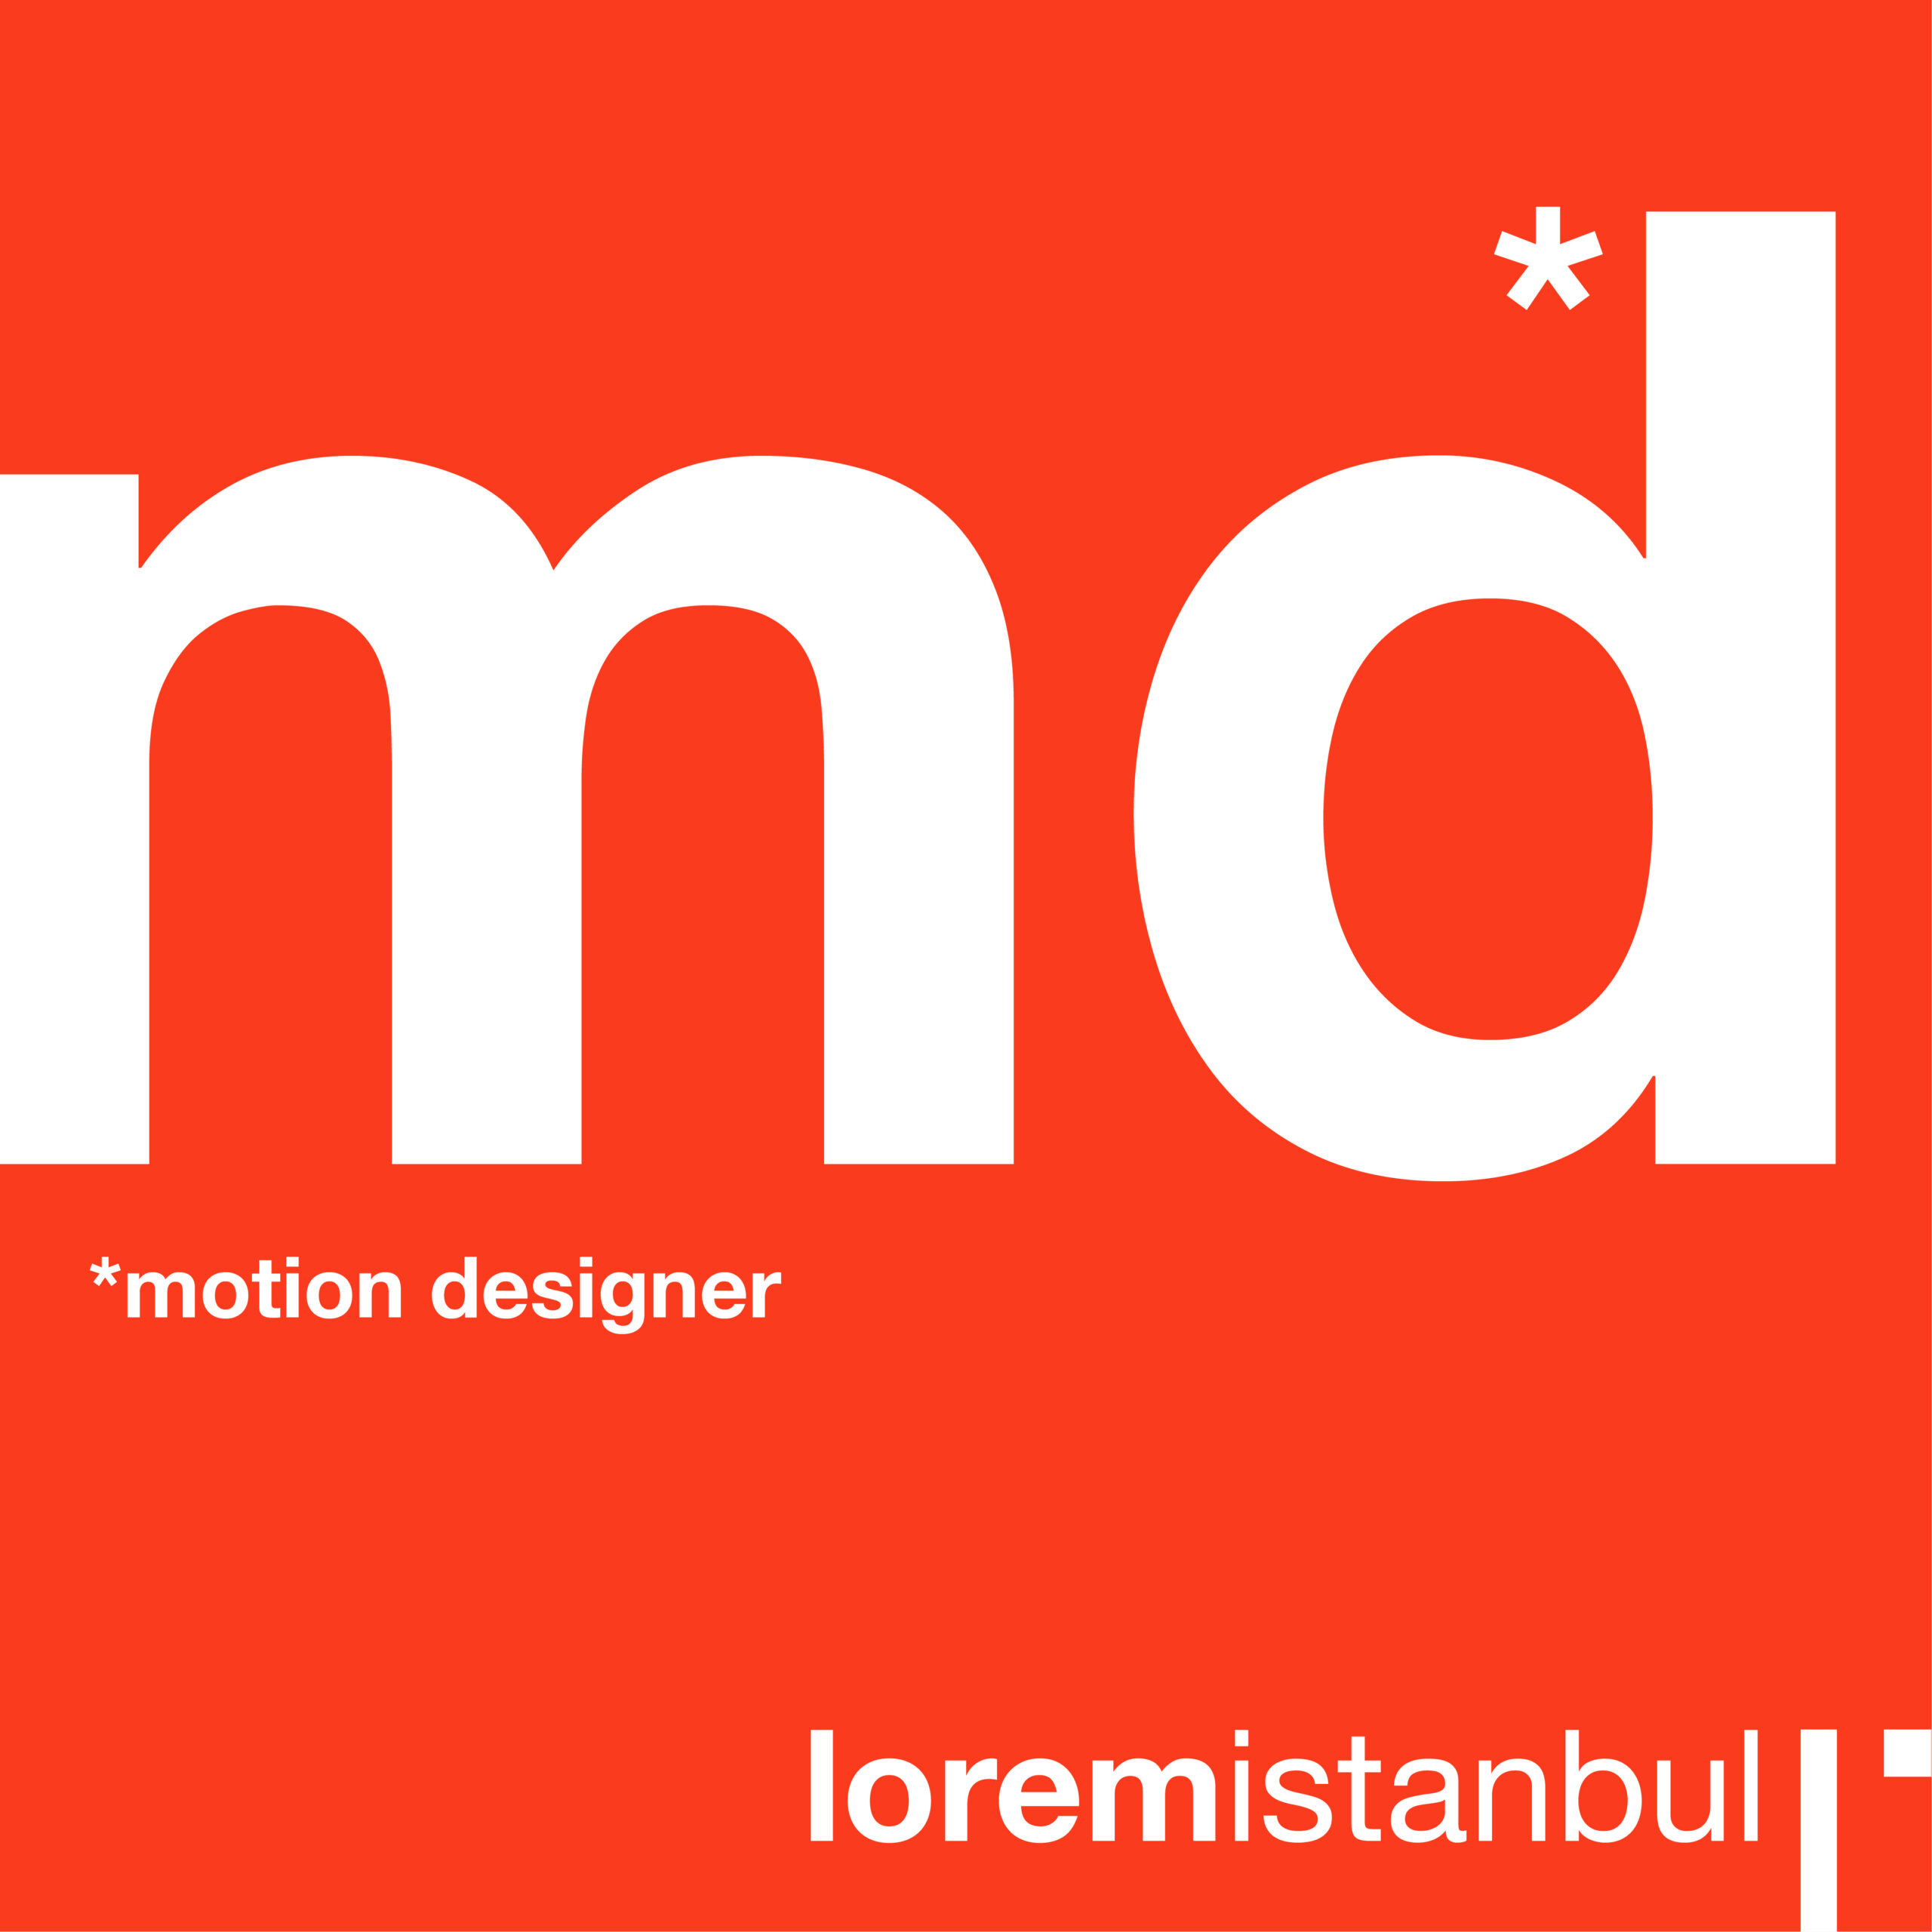 Loremİstanbul Motion Designer arıyor!